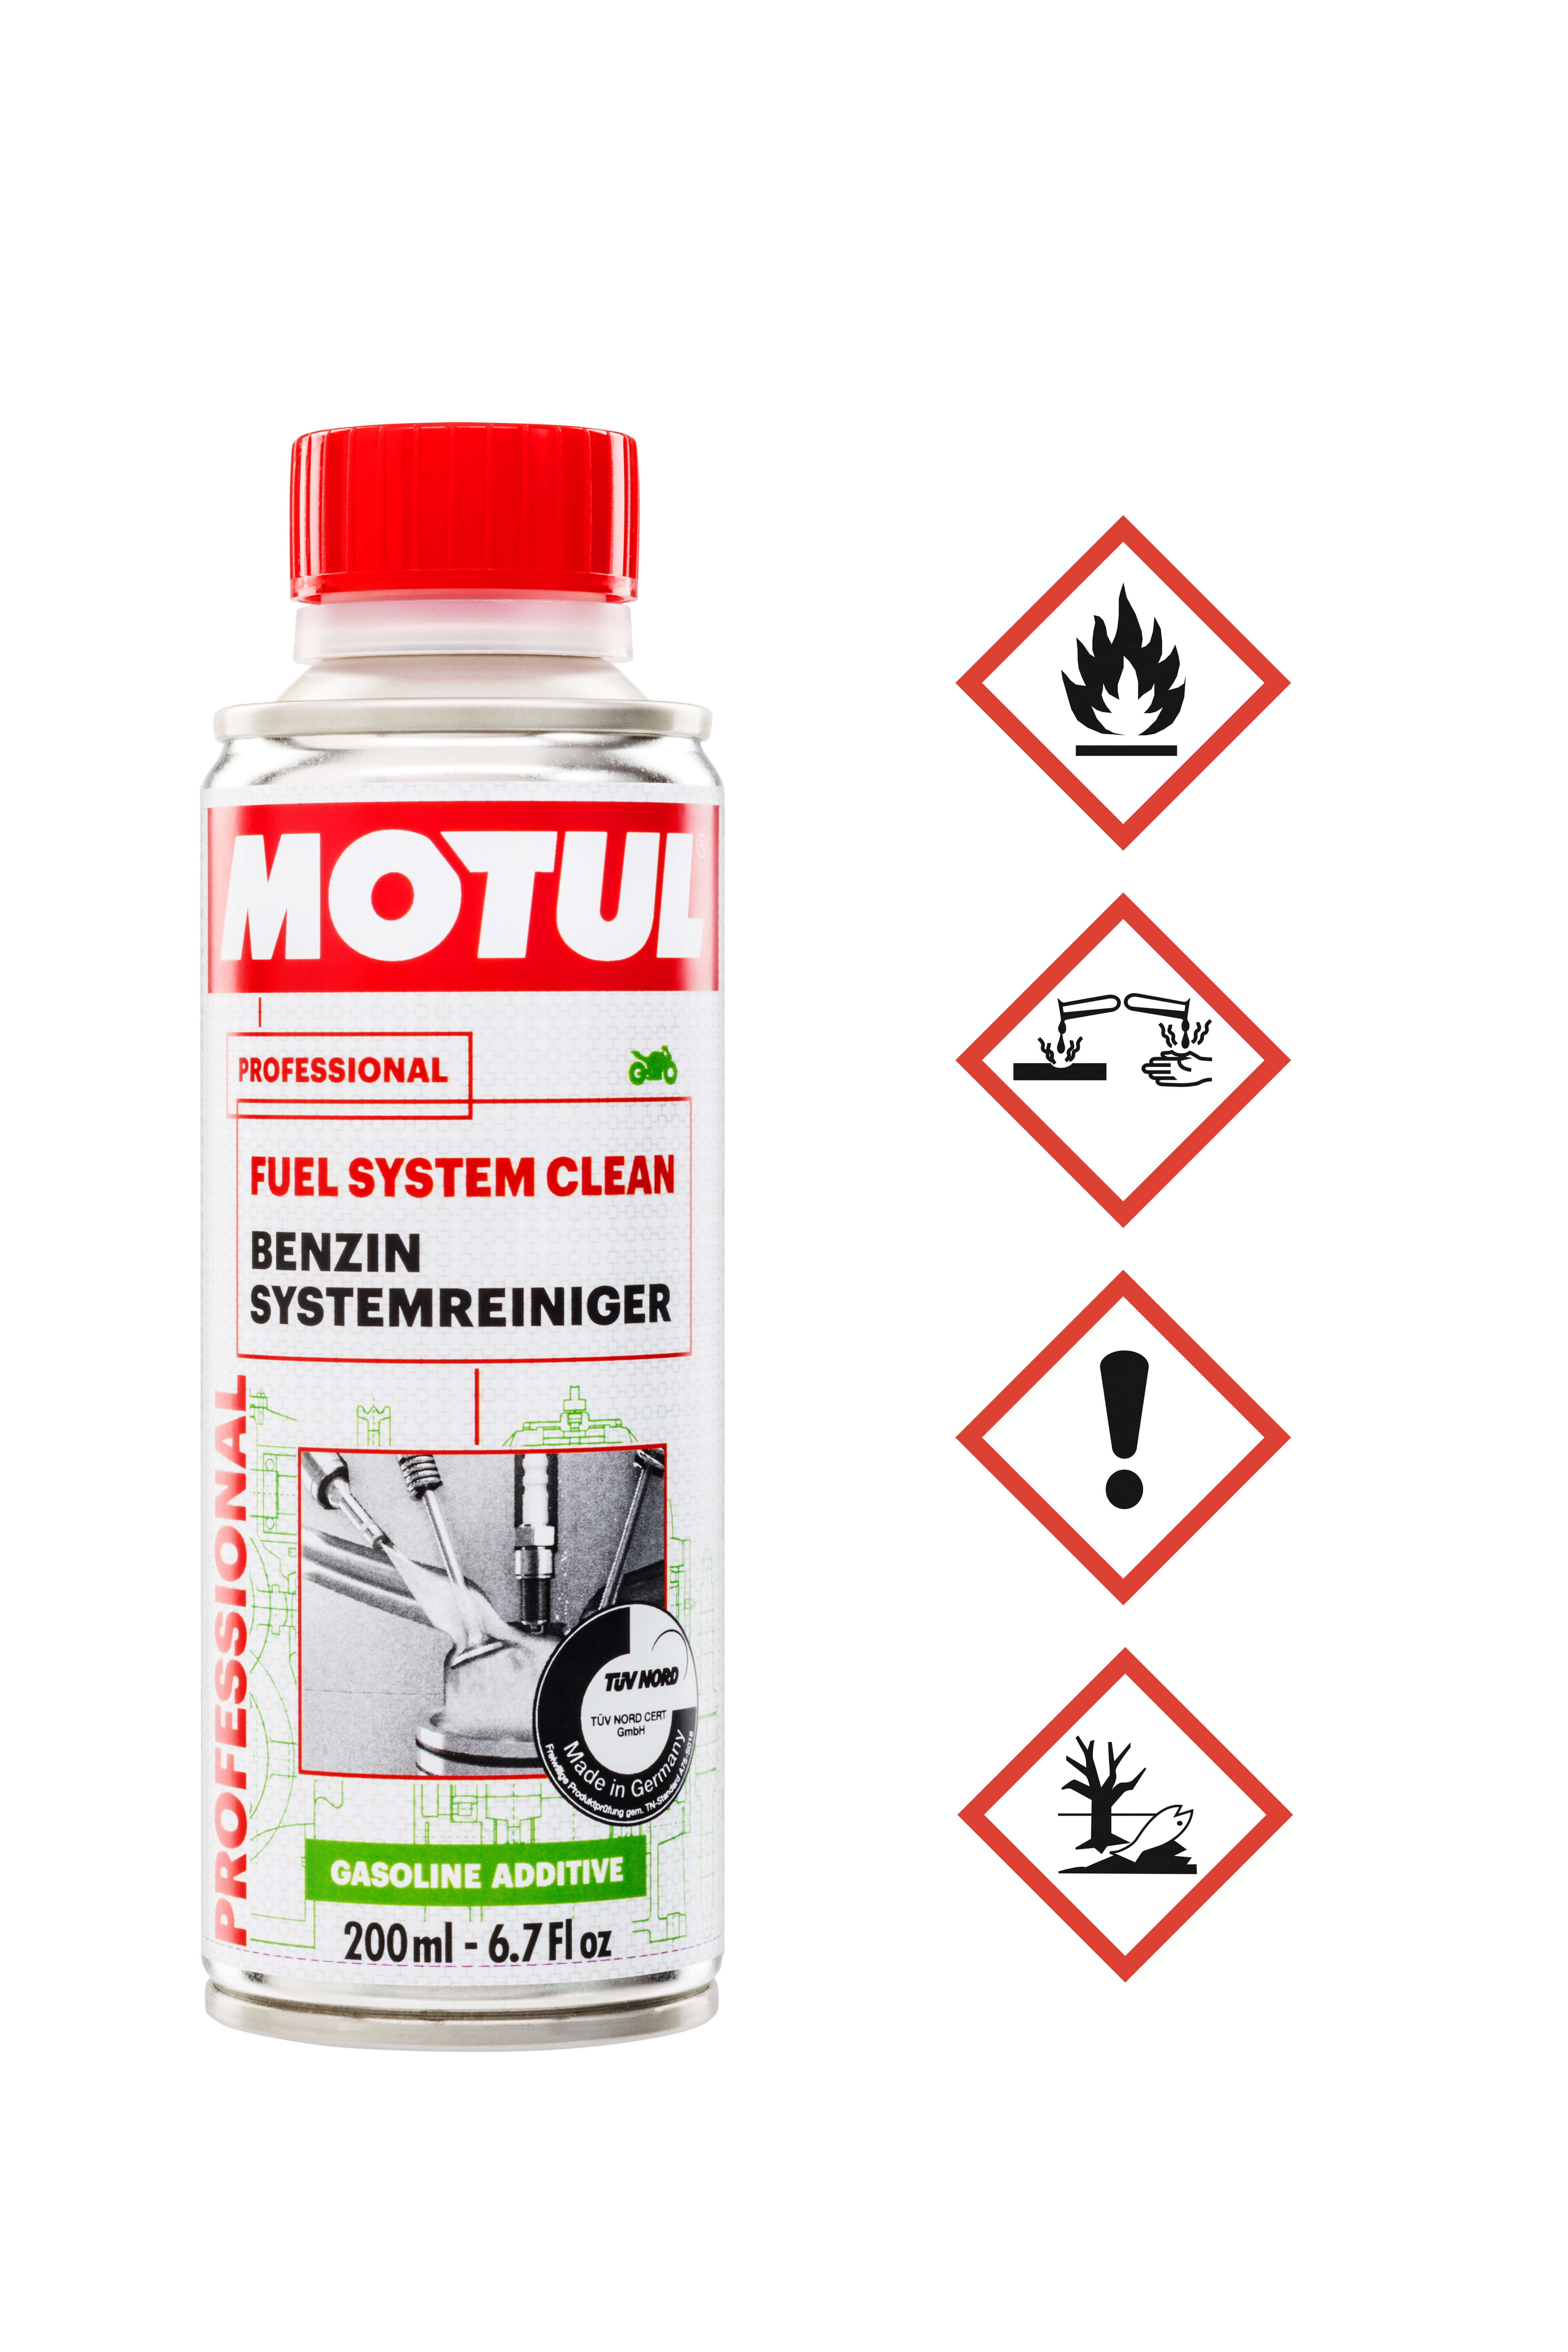 MOTUL Fuel System Clean Moto Winterpflege für Krafststoffsystem 200ml